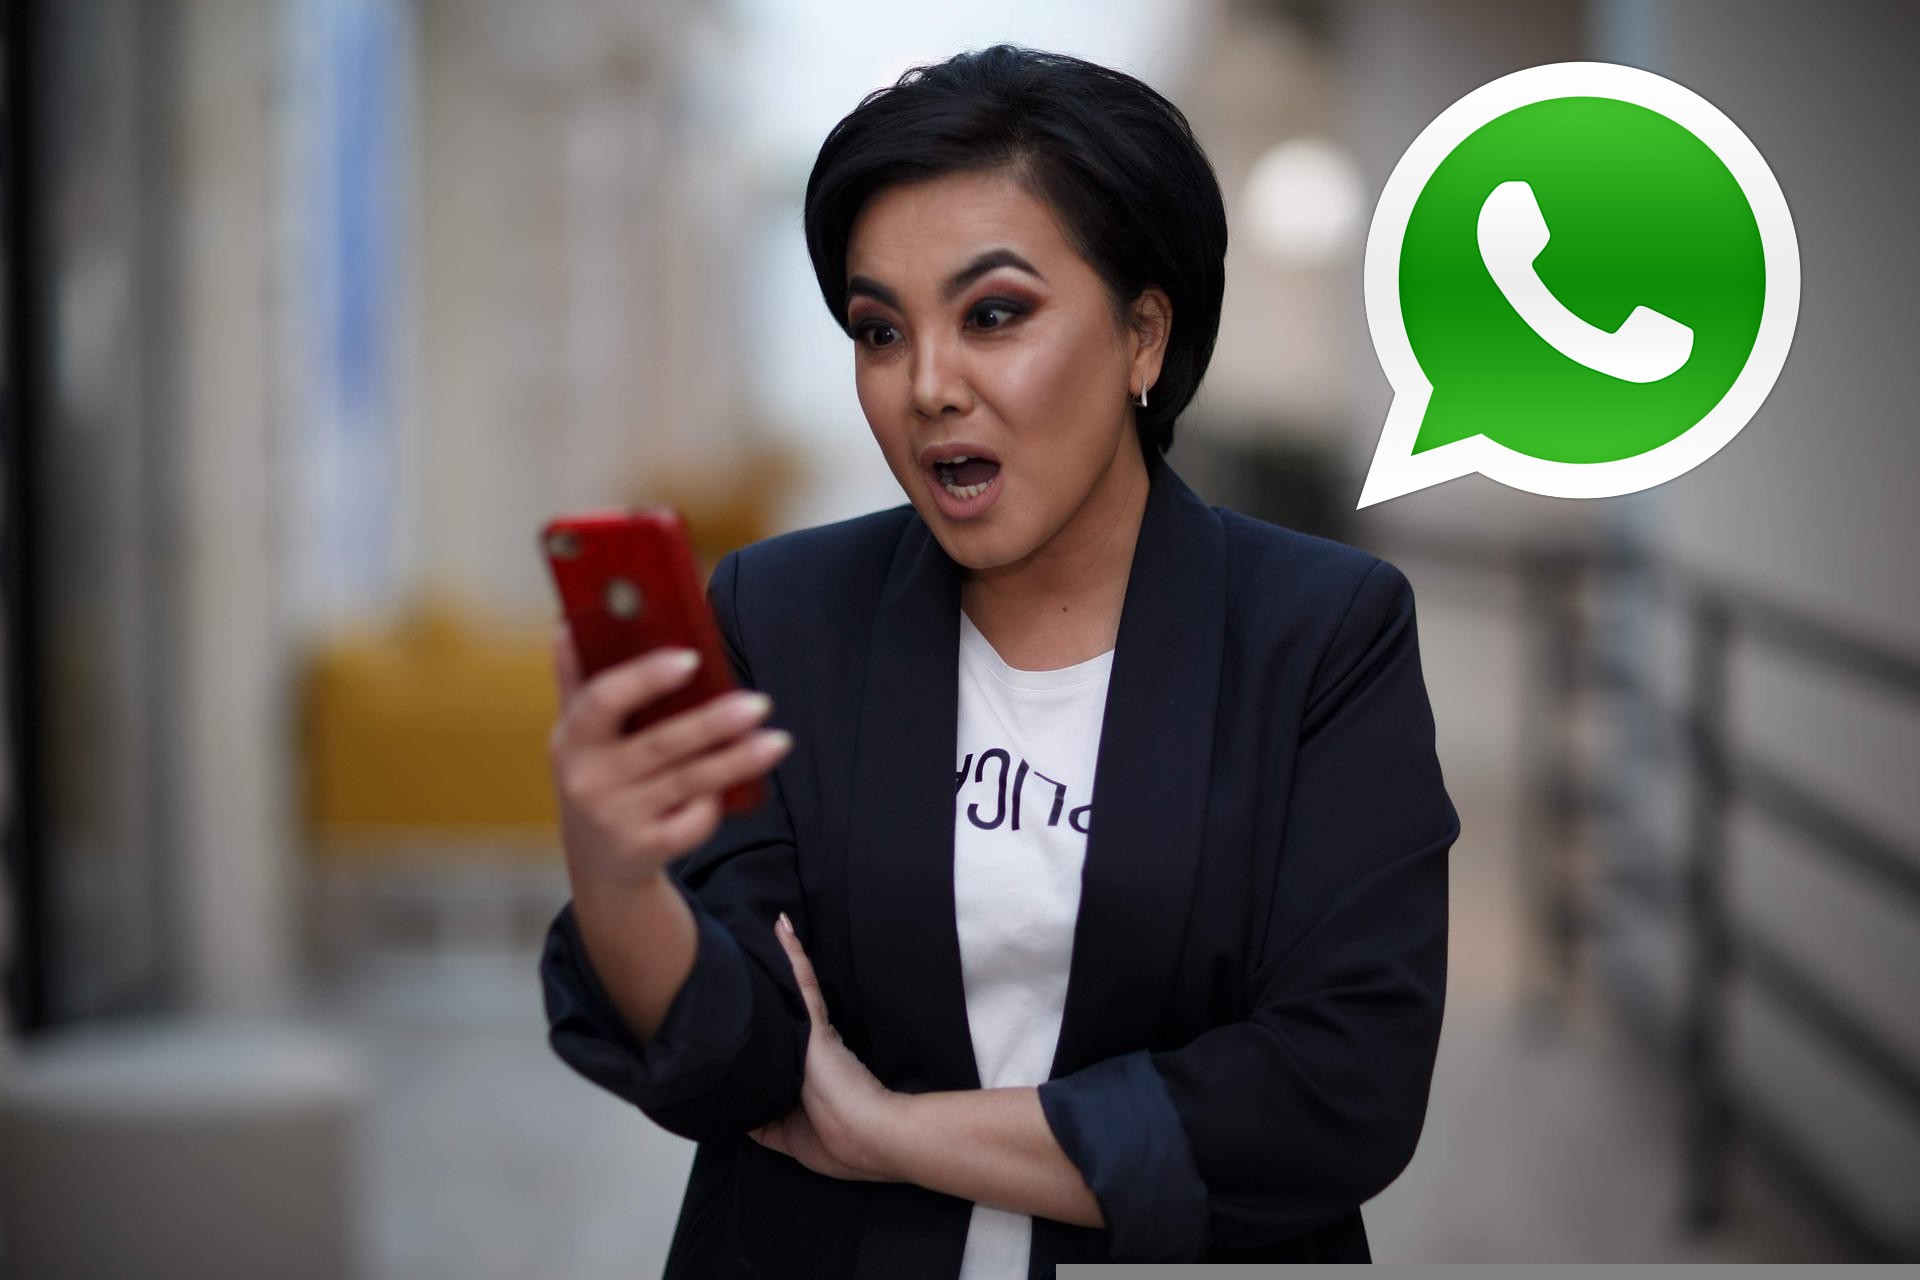 WhatsApp no me notifica los mensajes, ¿qué puedo hacer?